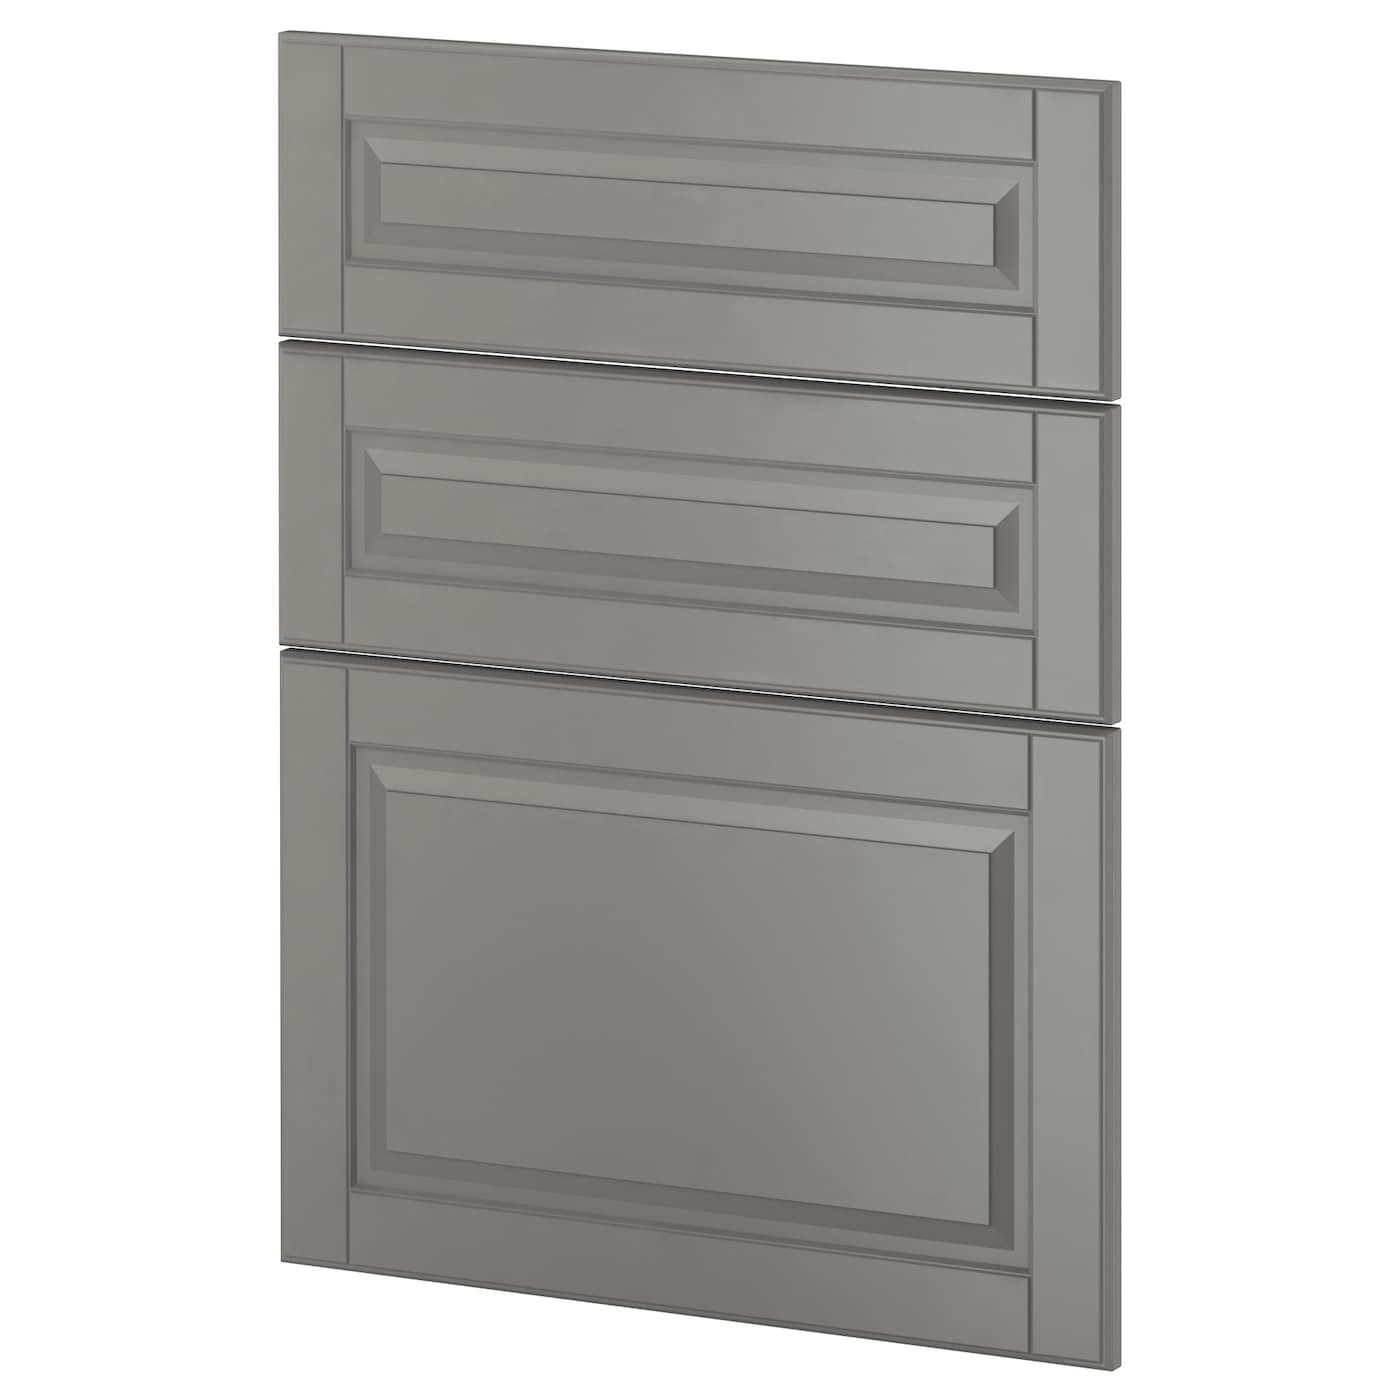 Накладная панель для посудомоечной машины - IKEA METOD, 80х60 см, серый, МЕТОД ИКЕА